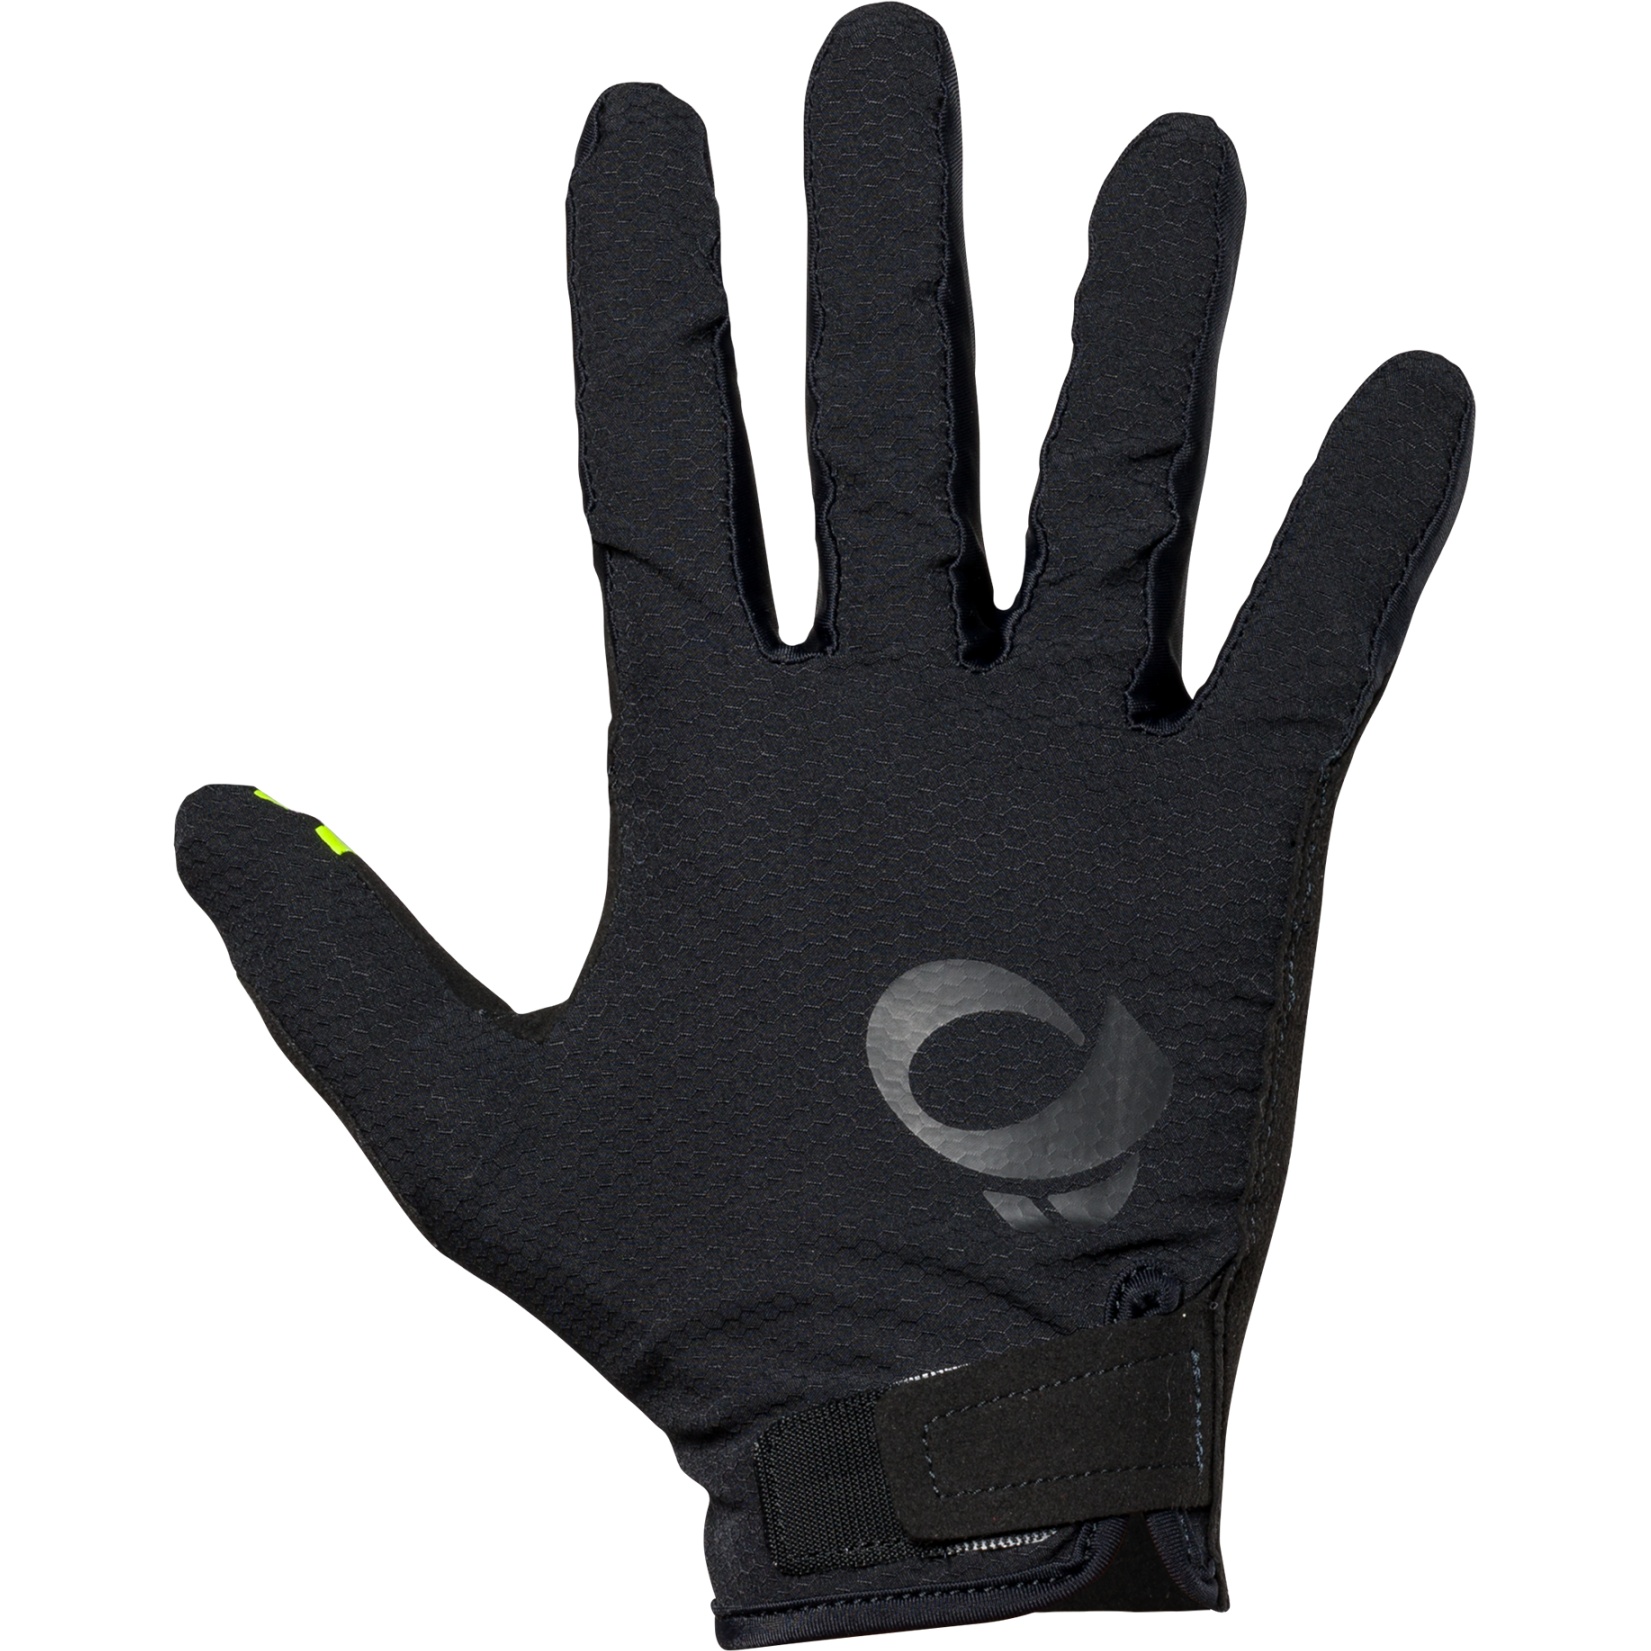 Produktbild von PEARL iZUMi Summit MTB Handschuhe Herren 14142402 - schwarz - 021